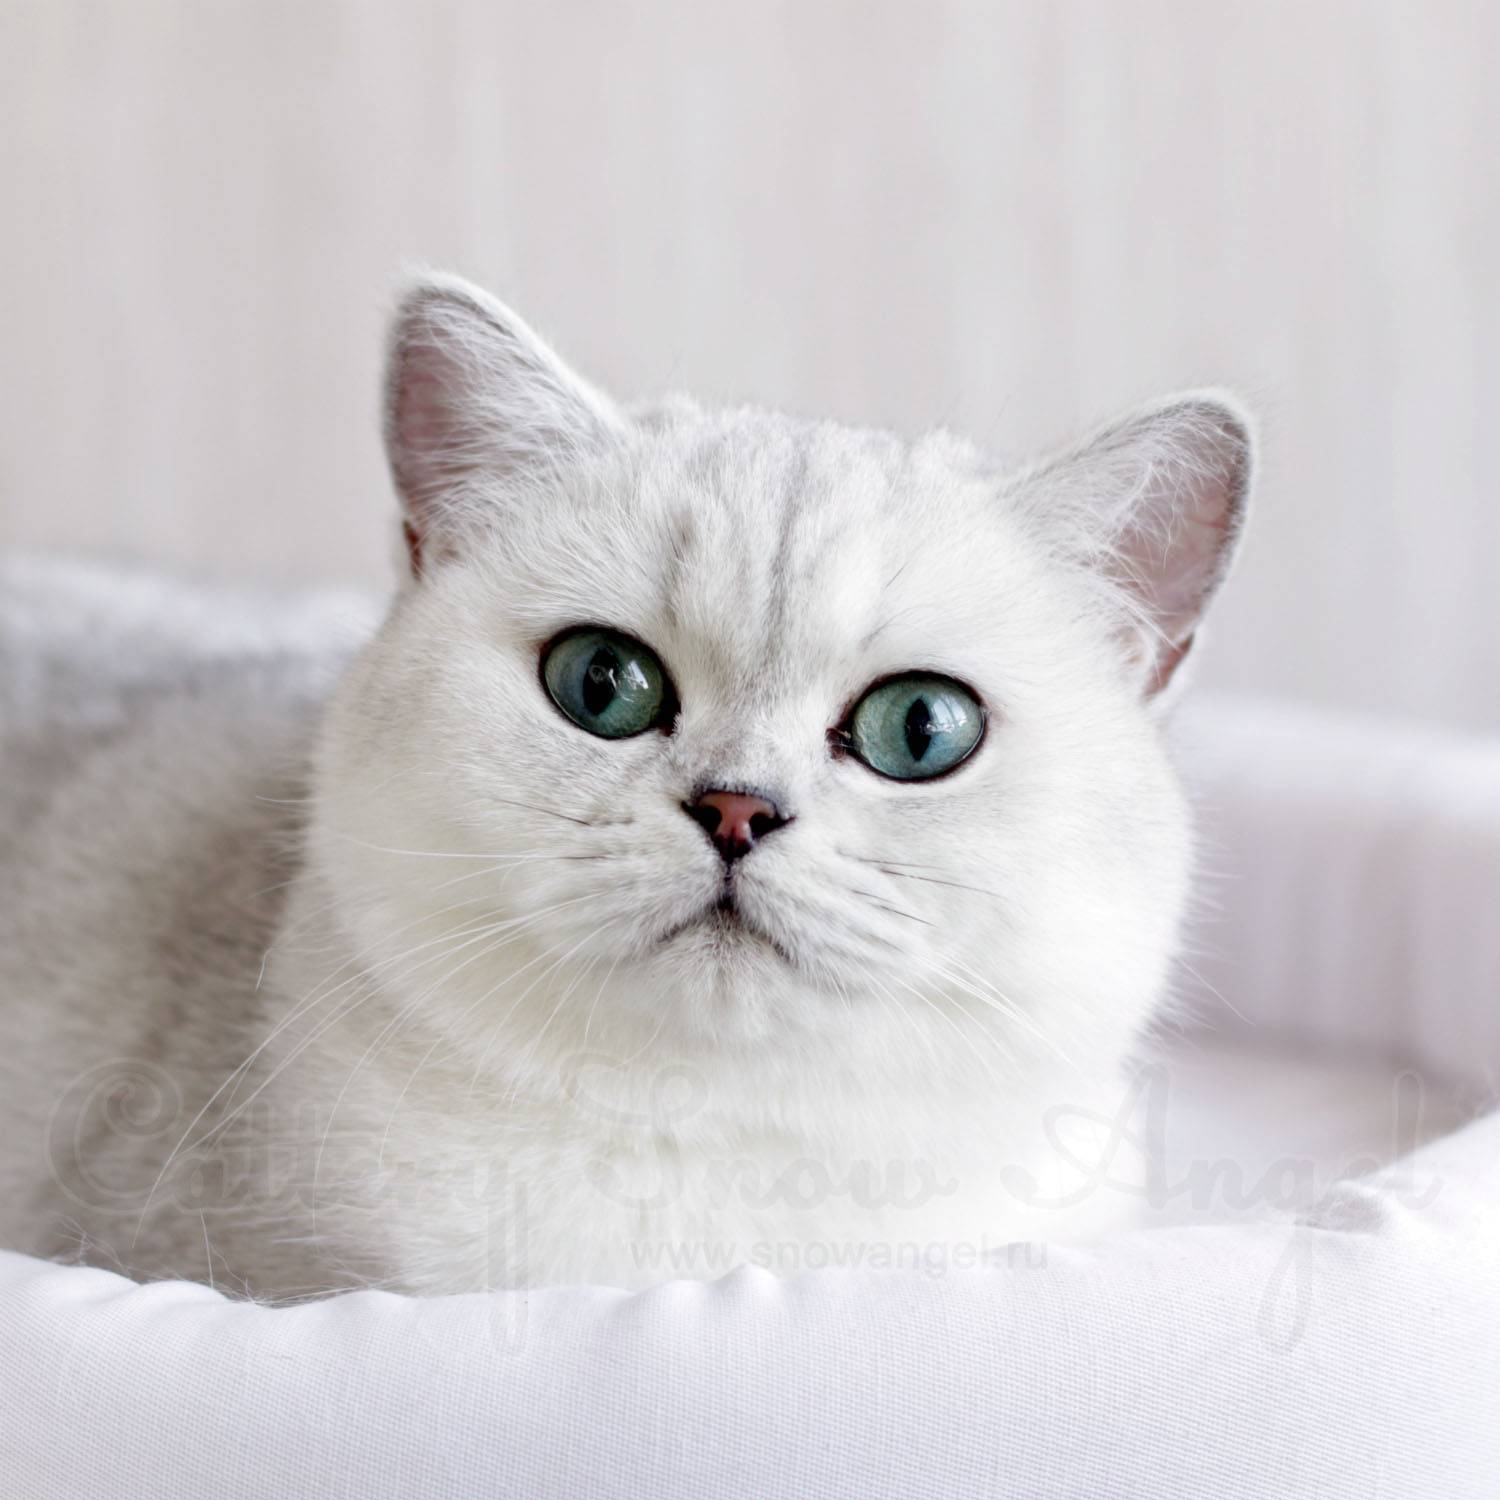 Кошка британская шиншилла: характер и внешность кота, уход за питомцем и его содержание, выбор котёнка и фото золотого британца